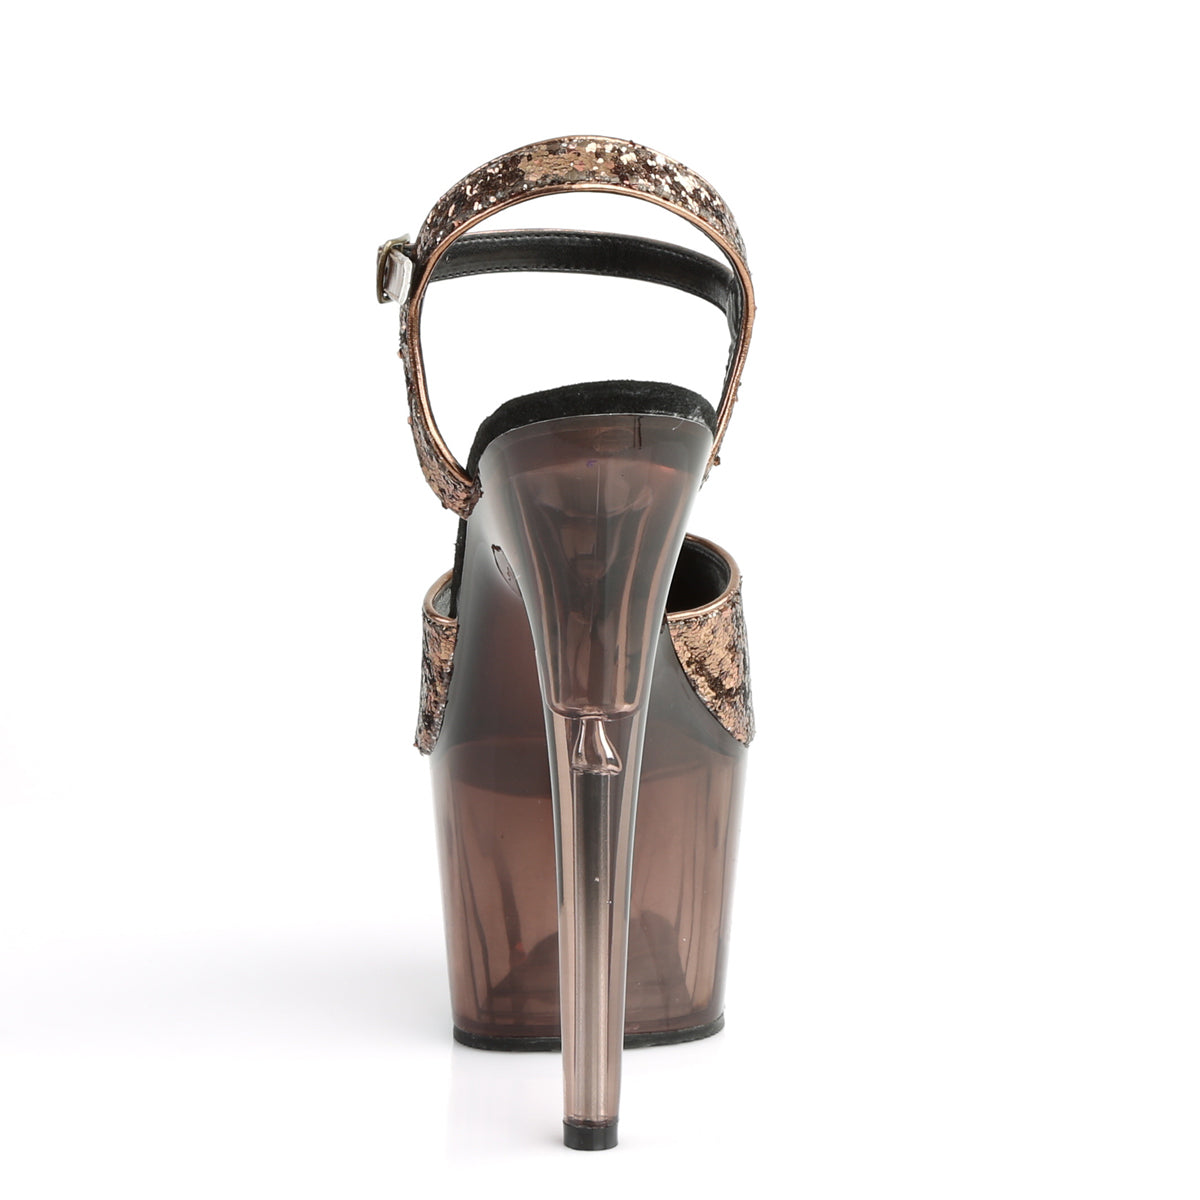 Pleaser Sandali da donna ADORE-710gt bronzo glitter / bronzo colorato